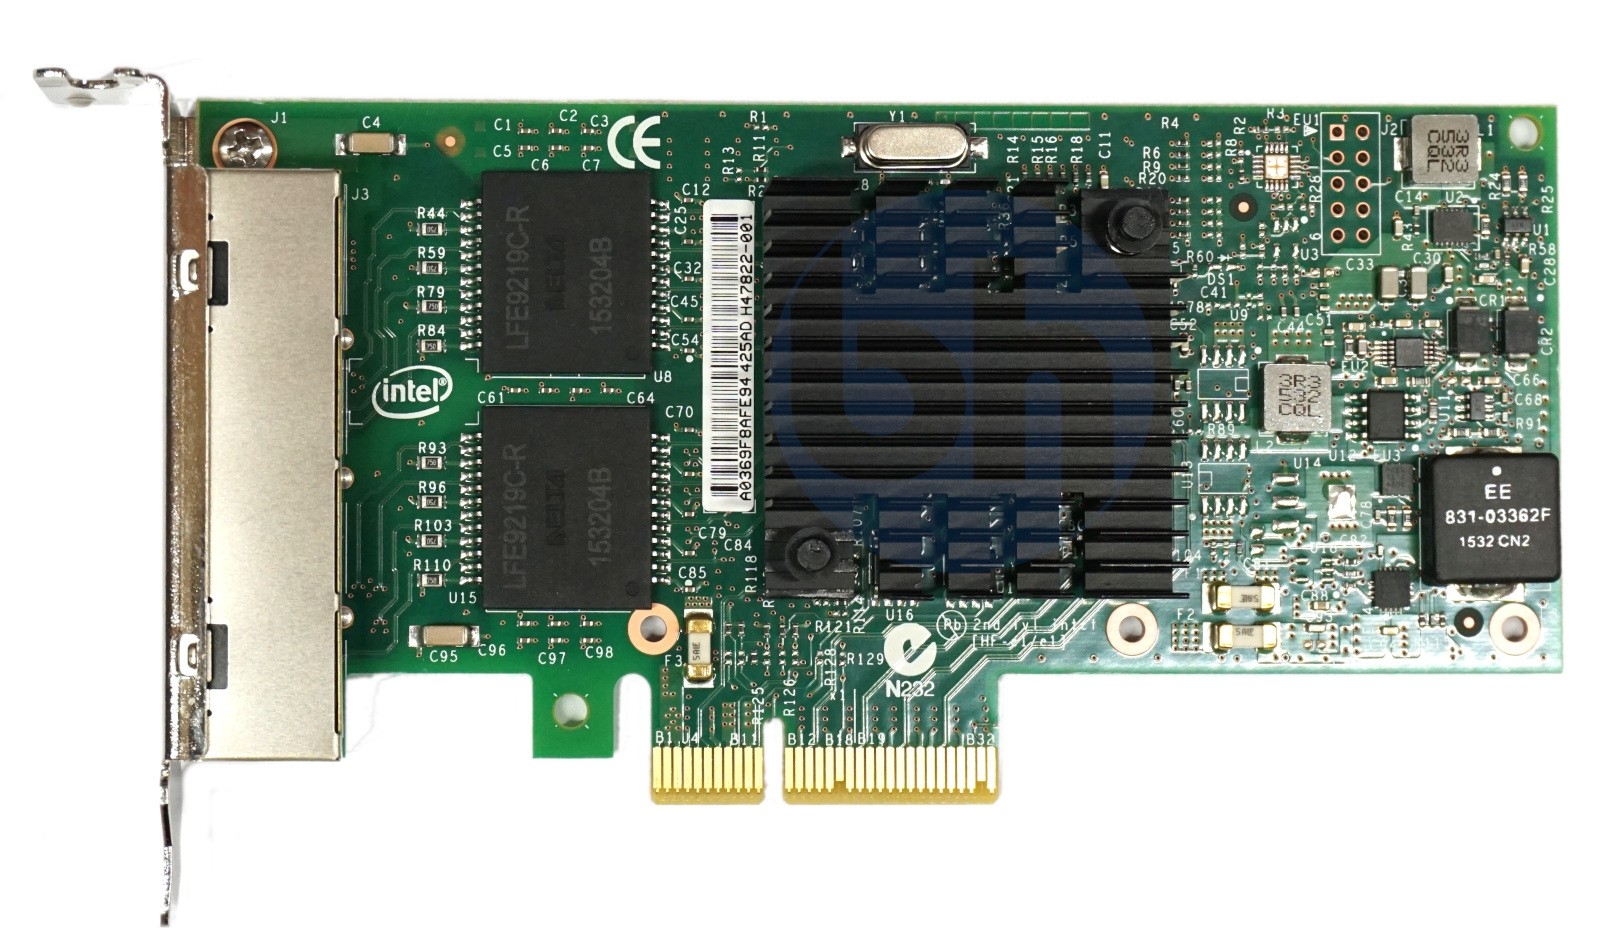 Intel I350-T4 Quad Port - 1GbE RJ45 Low Profile PCIe-x4 CNA